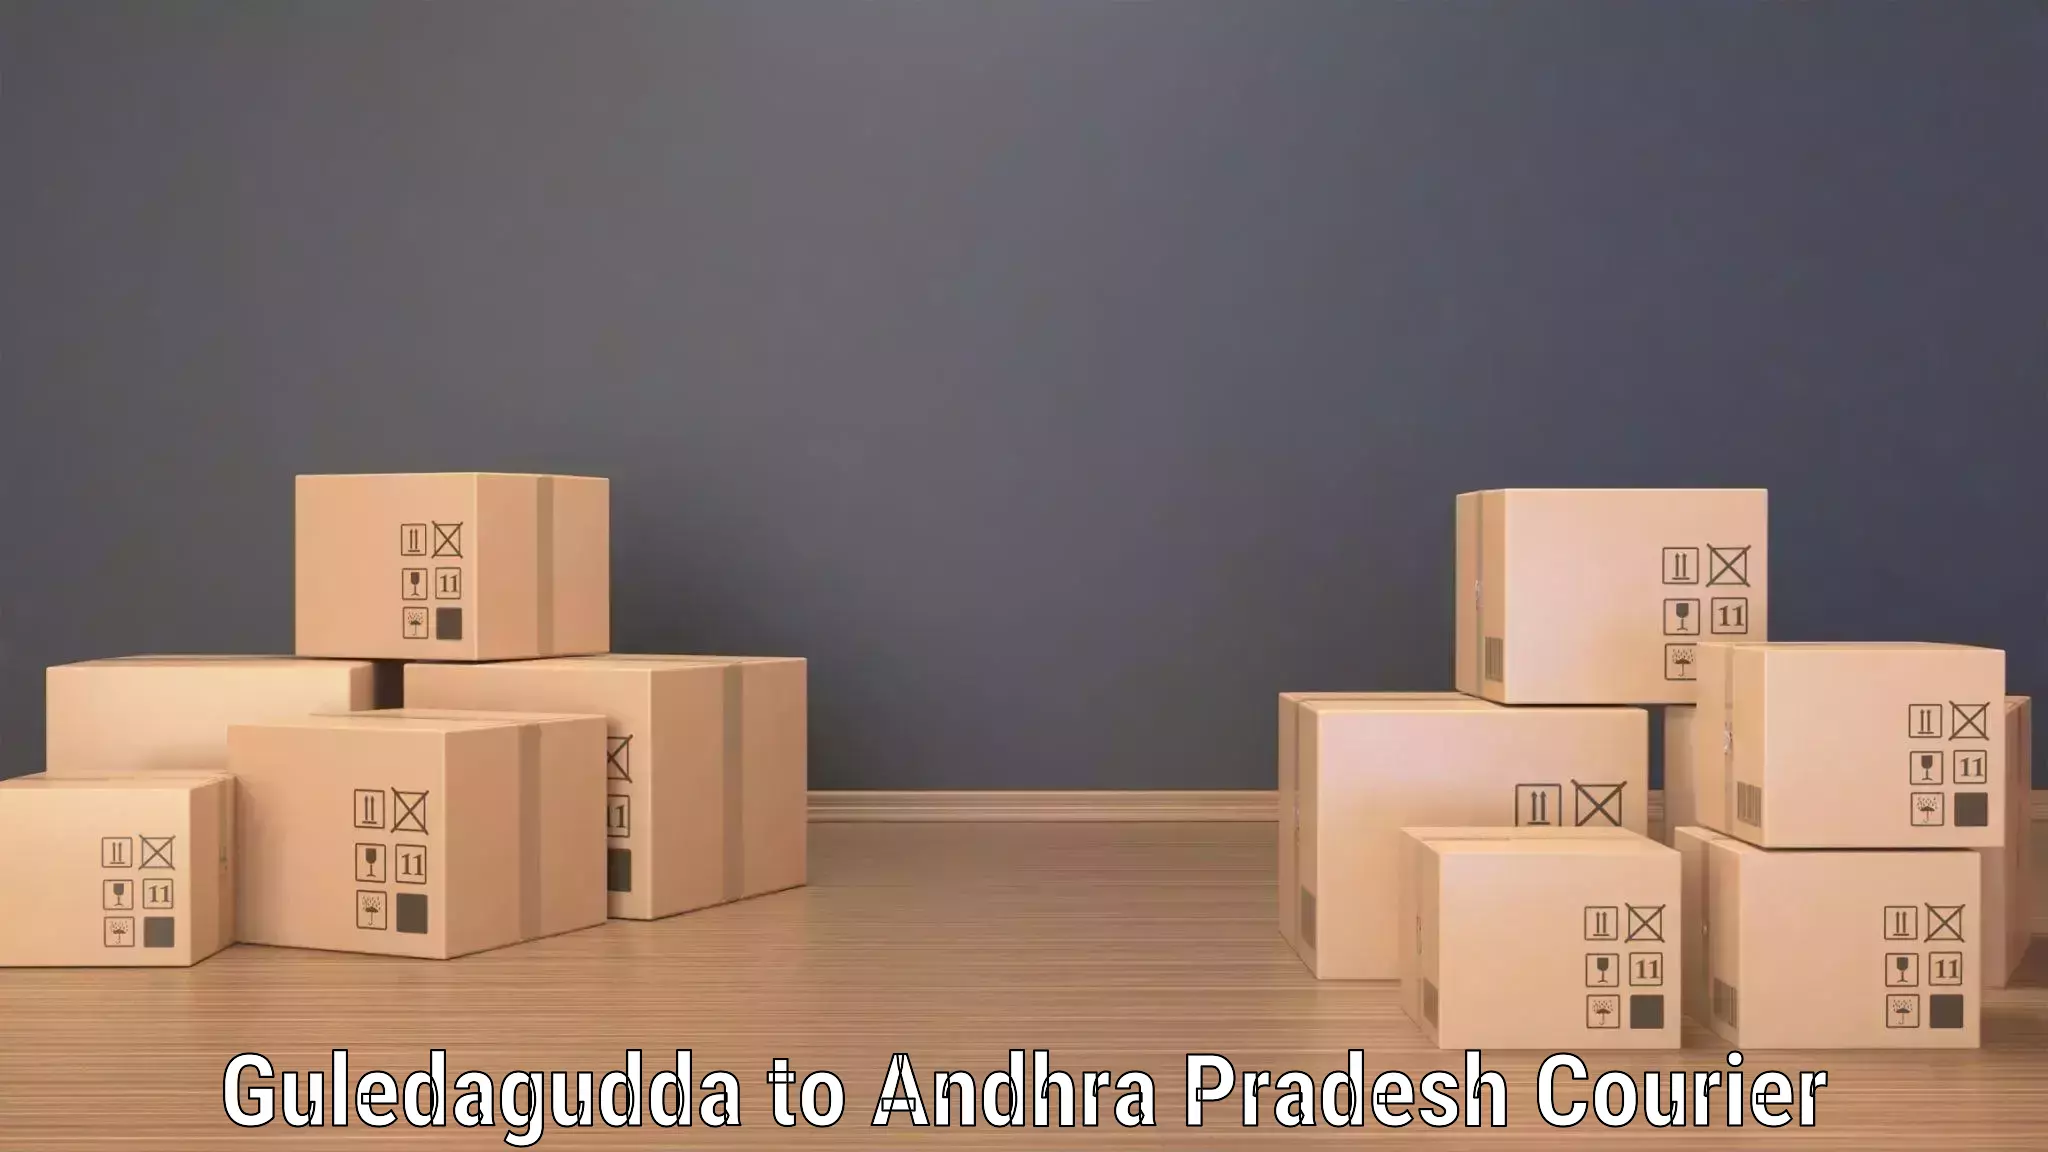 High-speed logistics services in Guledagudda to Nellore